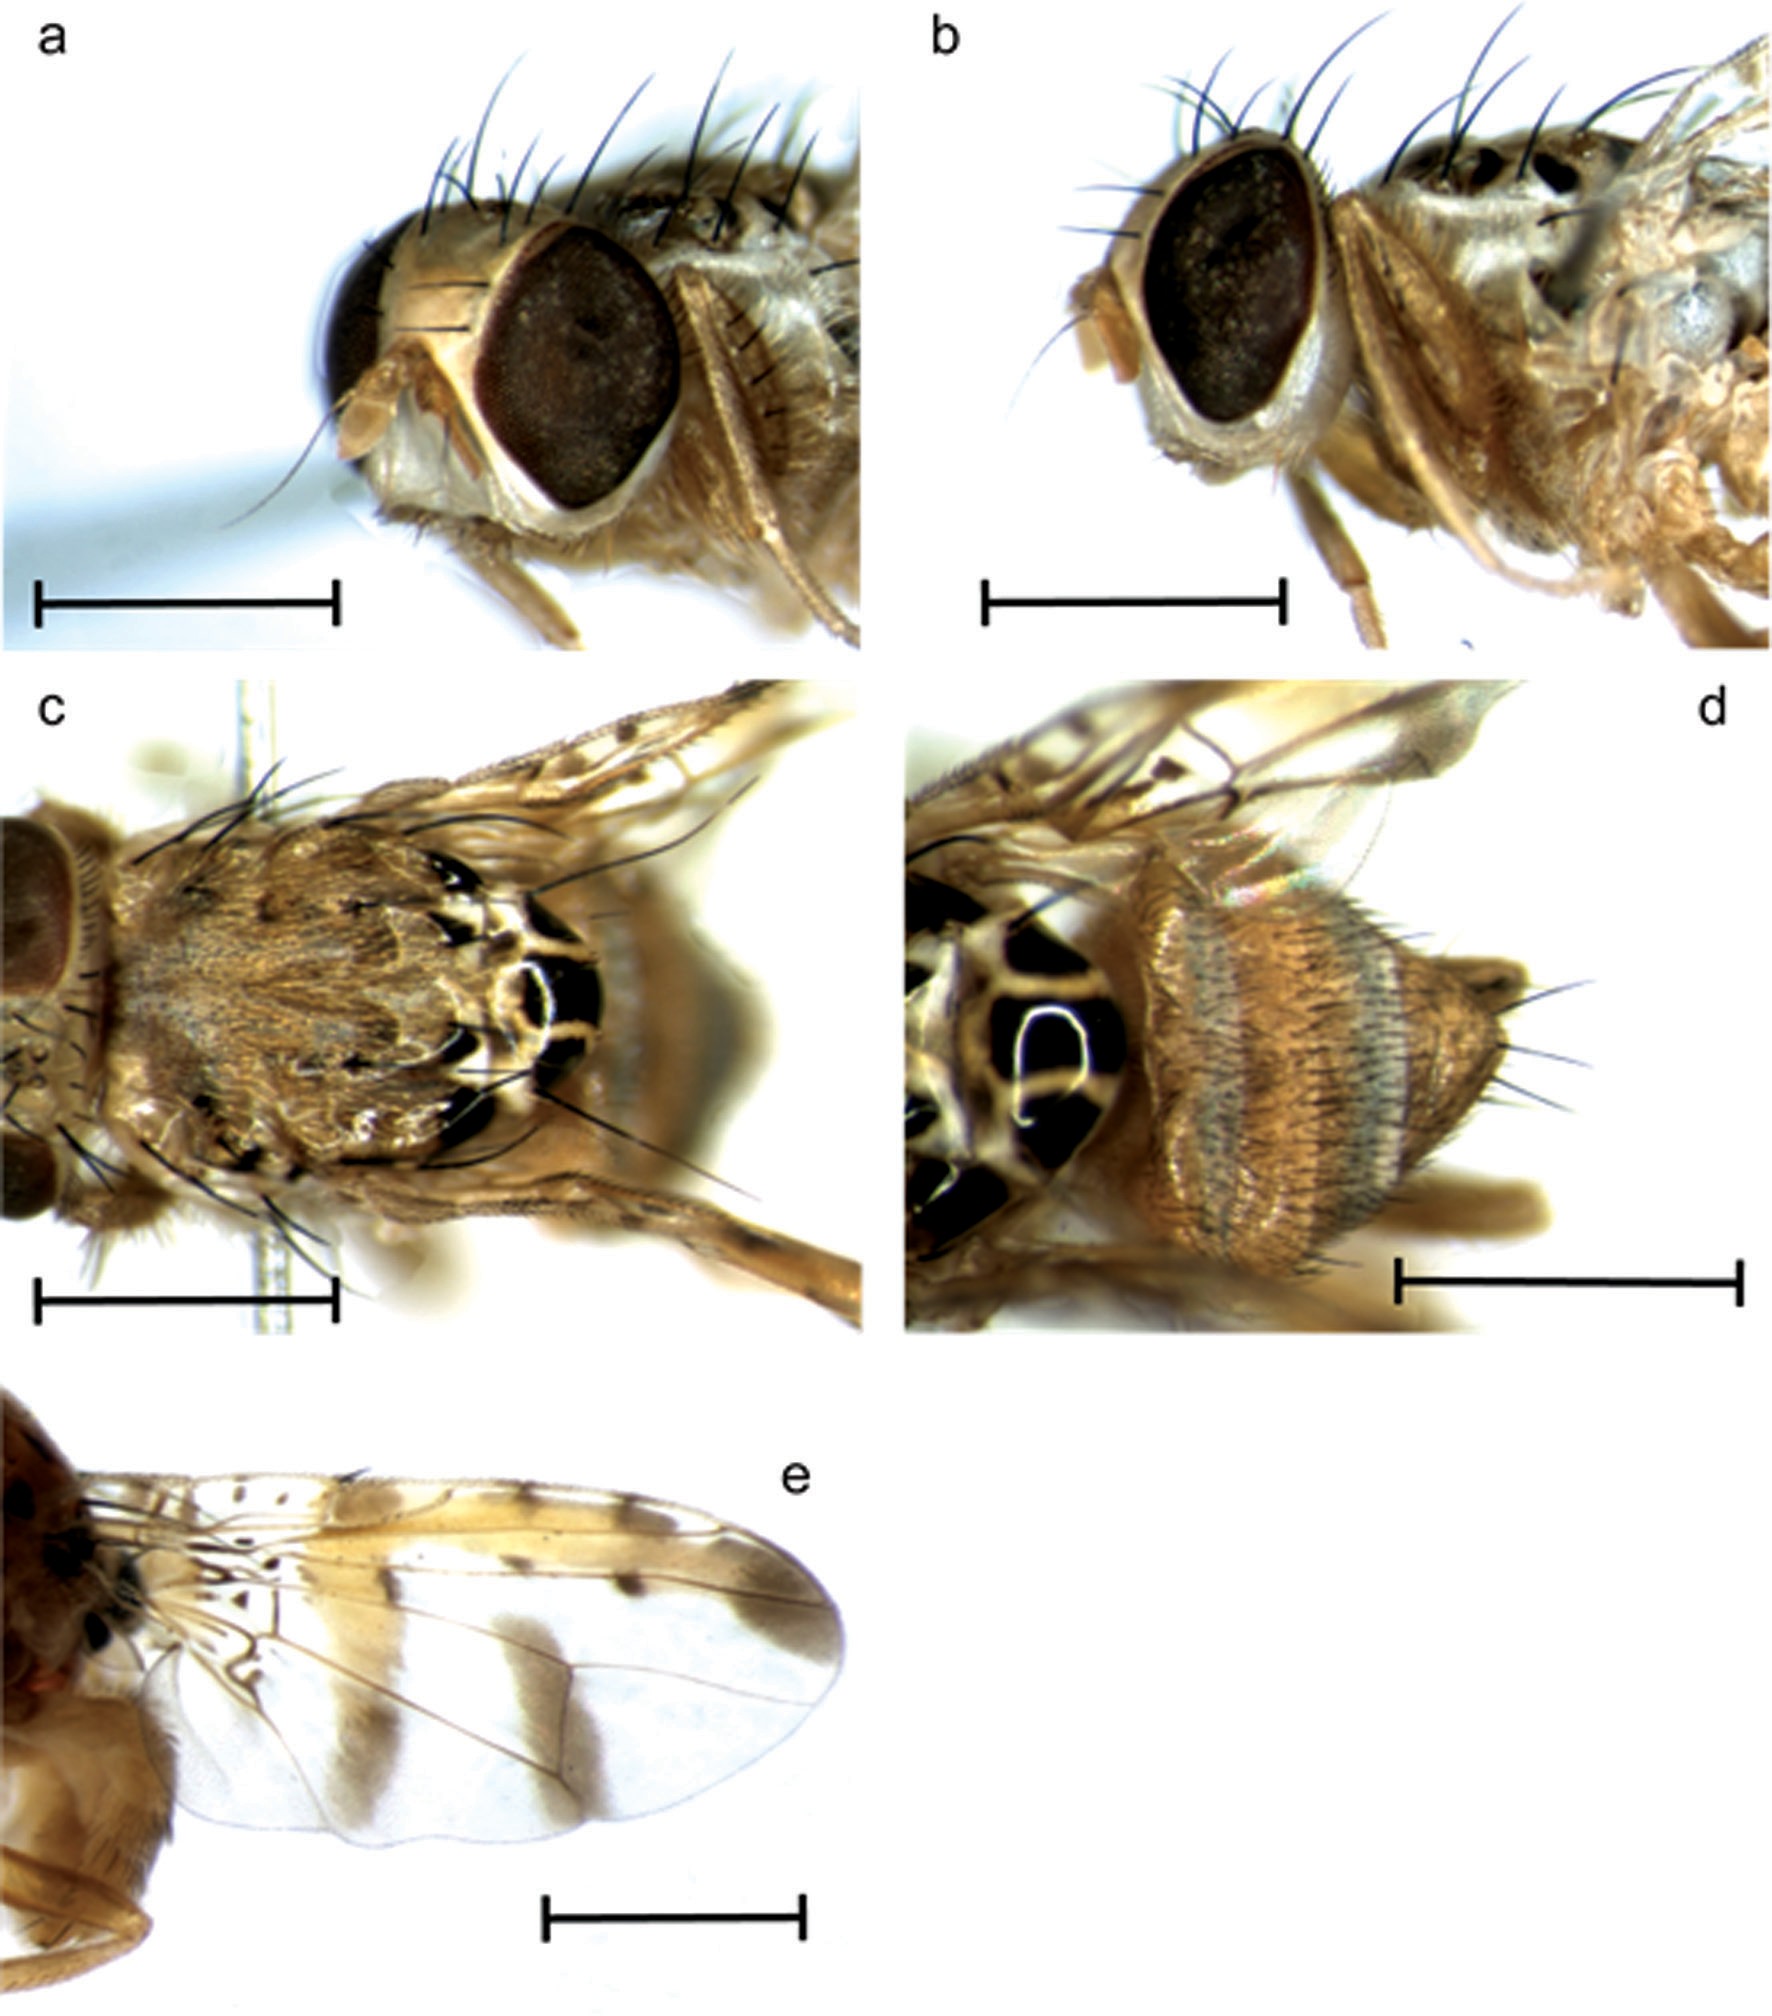 Image 3: Ceratitis pallidula showing various parts of the body (source: De Meyer et al., 2016)